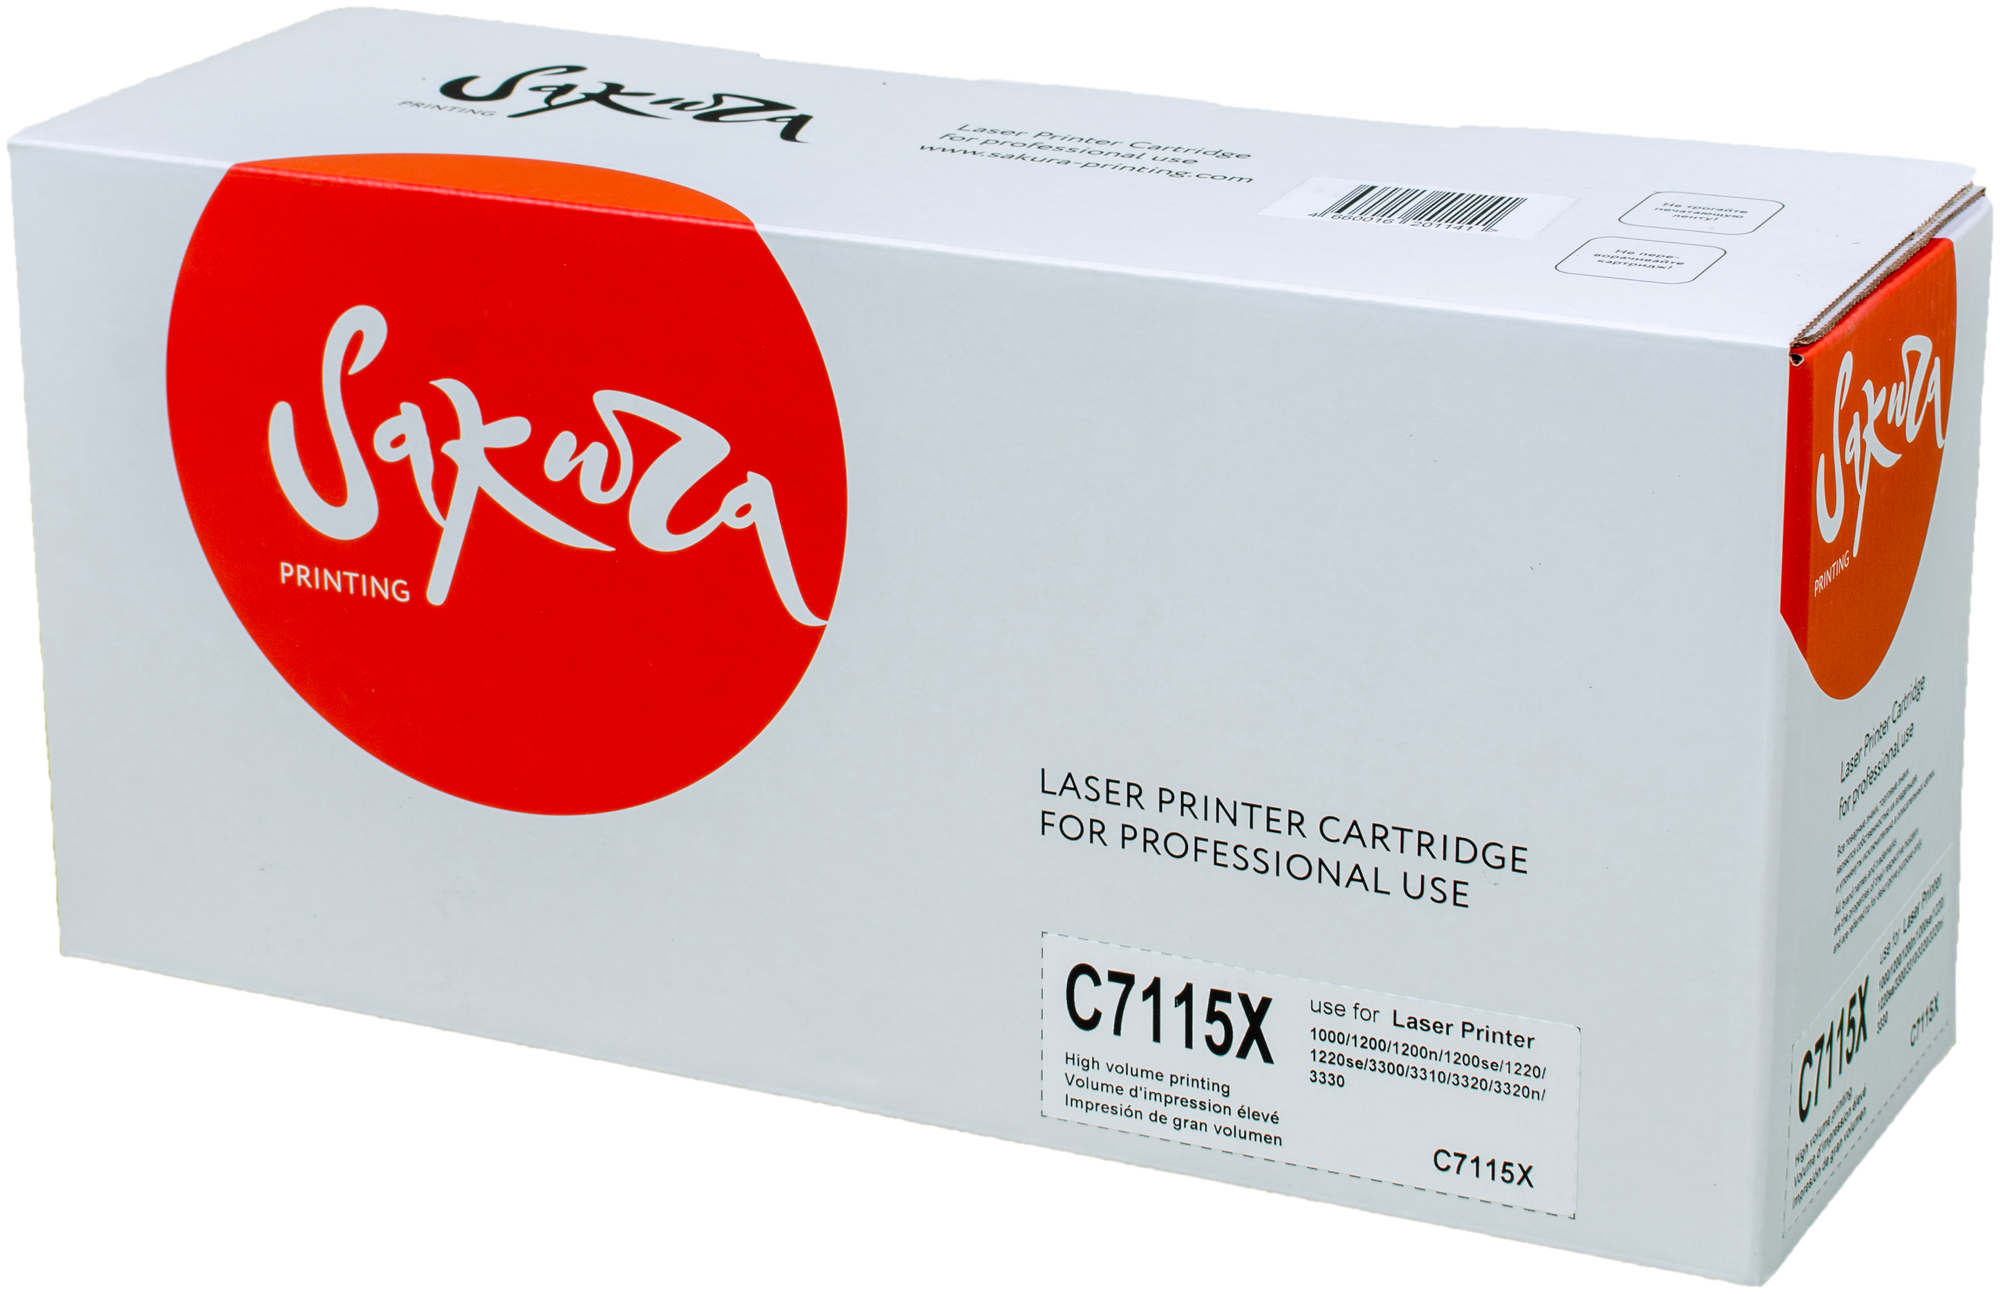 Картридж Sakura Printing SAKURA С7115X для HPLaserJet 1000/1200/1200n/1200se/1220/1220se/3300/3310/3320/3320n/333, черный 3500стр.